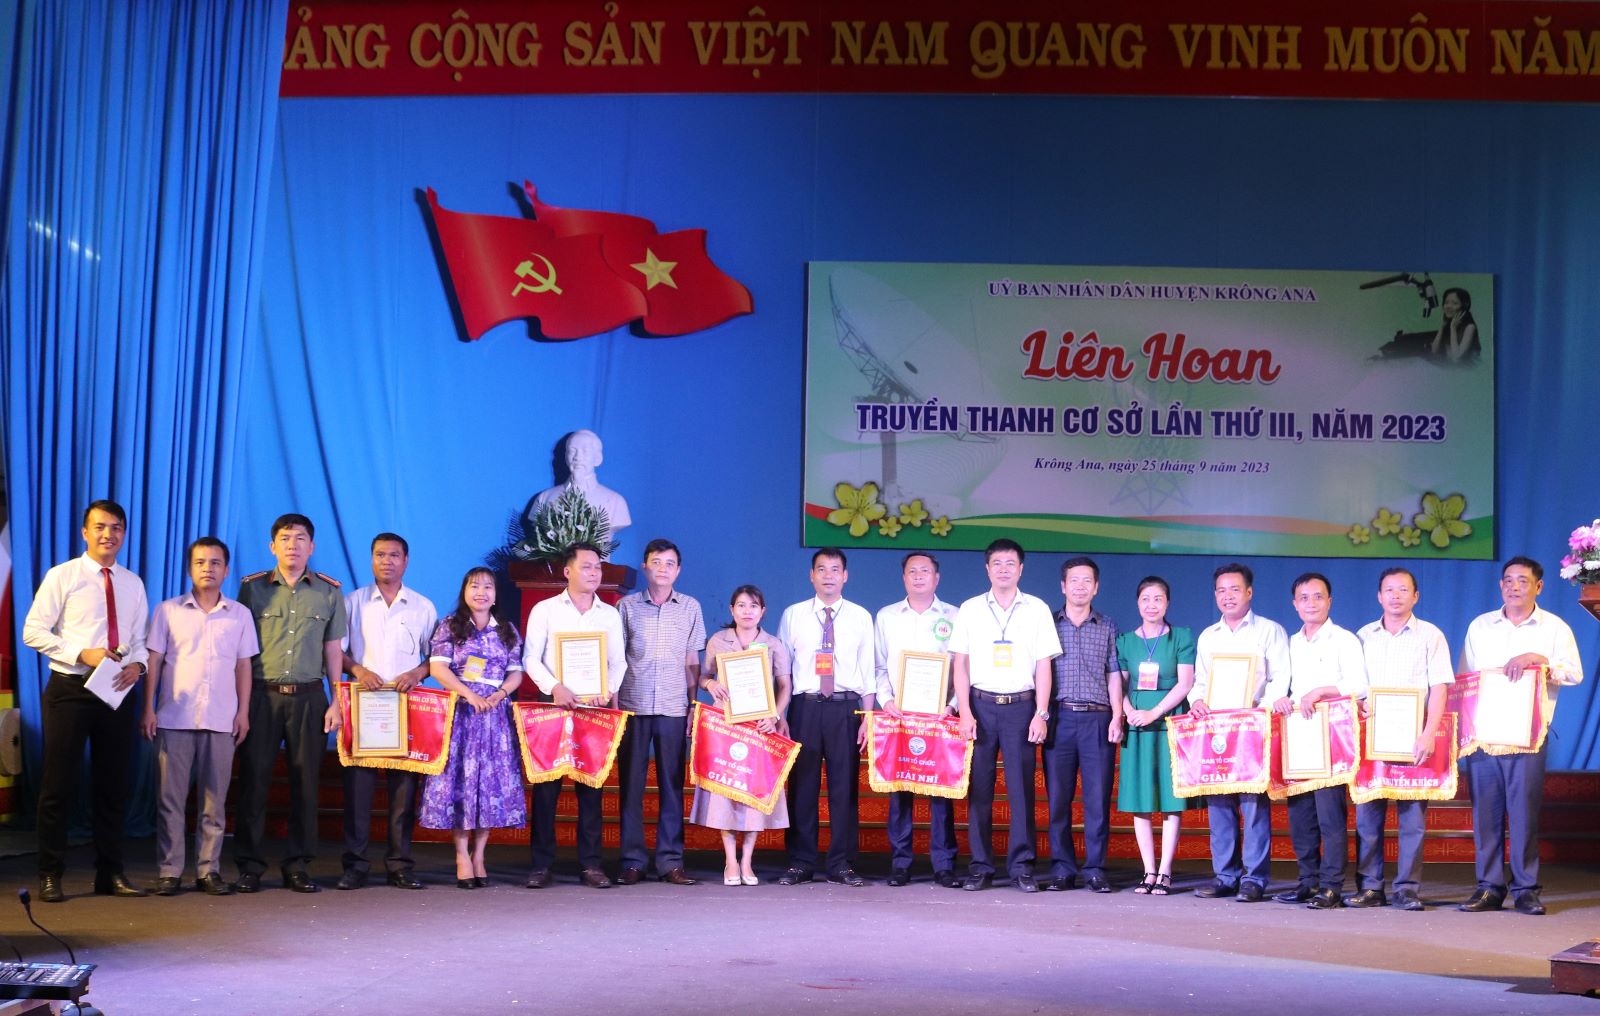 Liên hoan Truyền thanh cơ sở huyện Krông Ana lần thứ III năm 2023